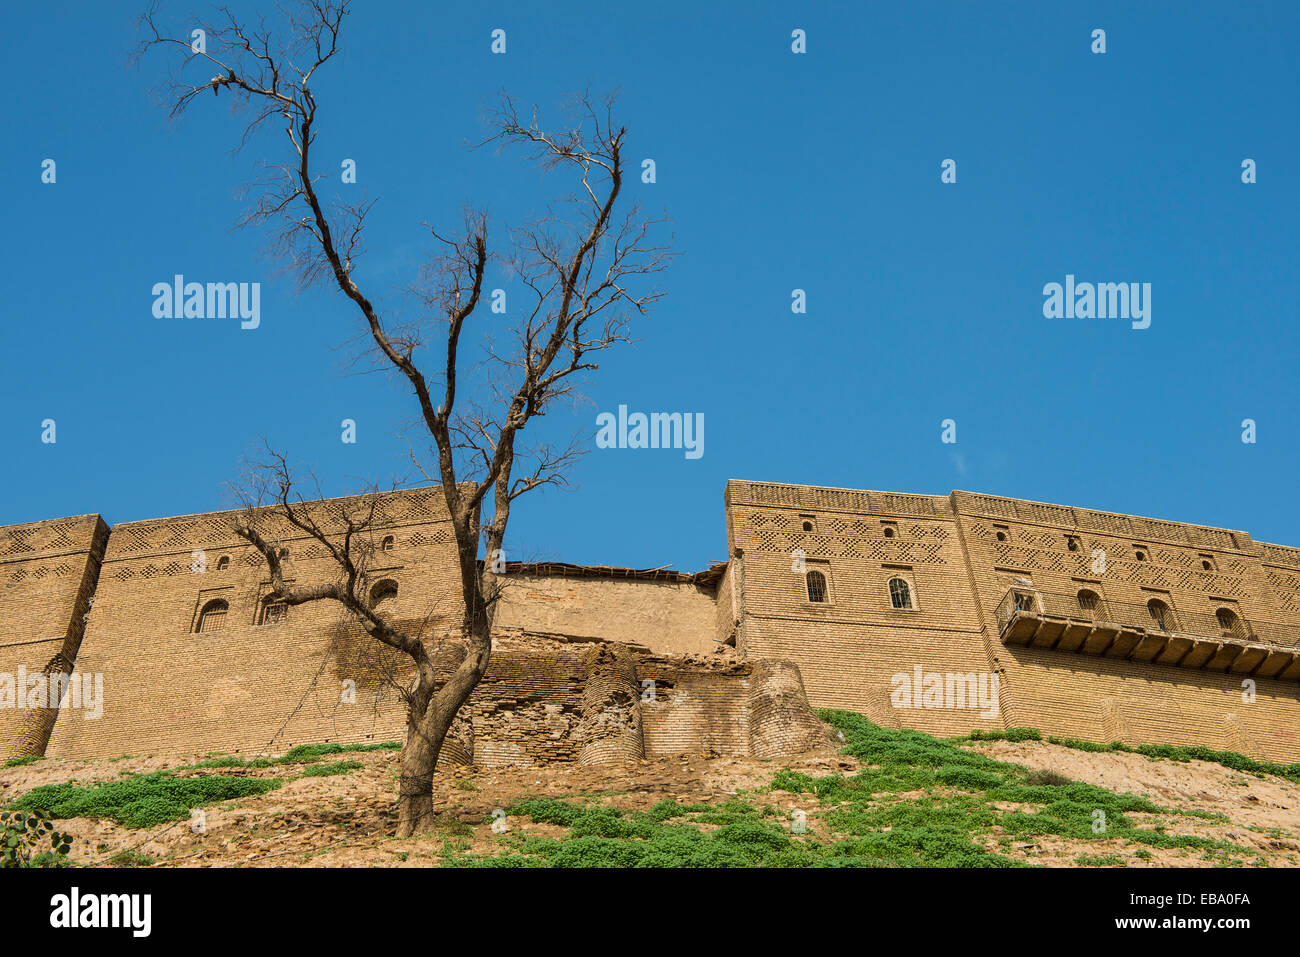 Citadelle d'Erbil, Qalat Hawler citadelle, Erbil, Province d'Erbil, Irak, Kurdistan irakien Banque D'Images